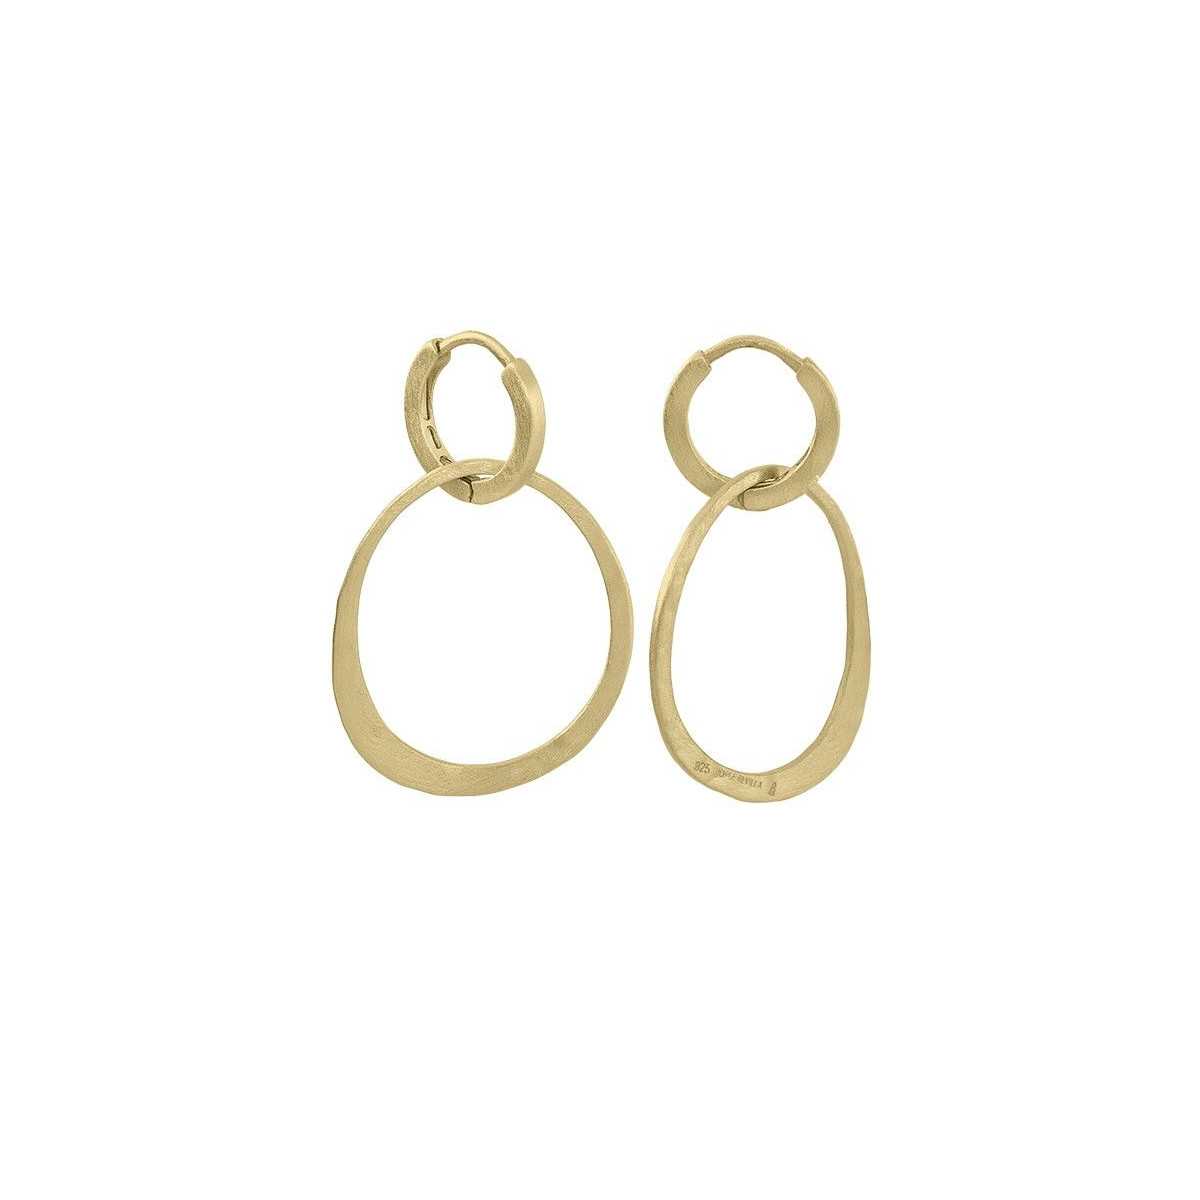 OLYMPIA Earrings in Silver. 18k Gold Vermeil